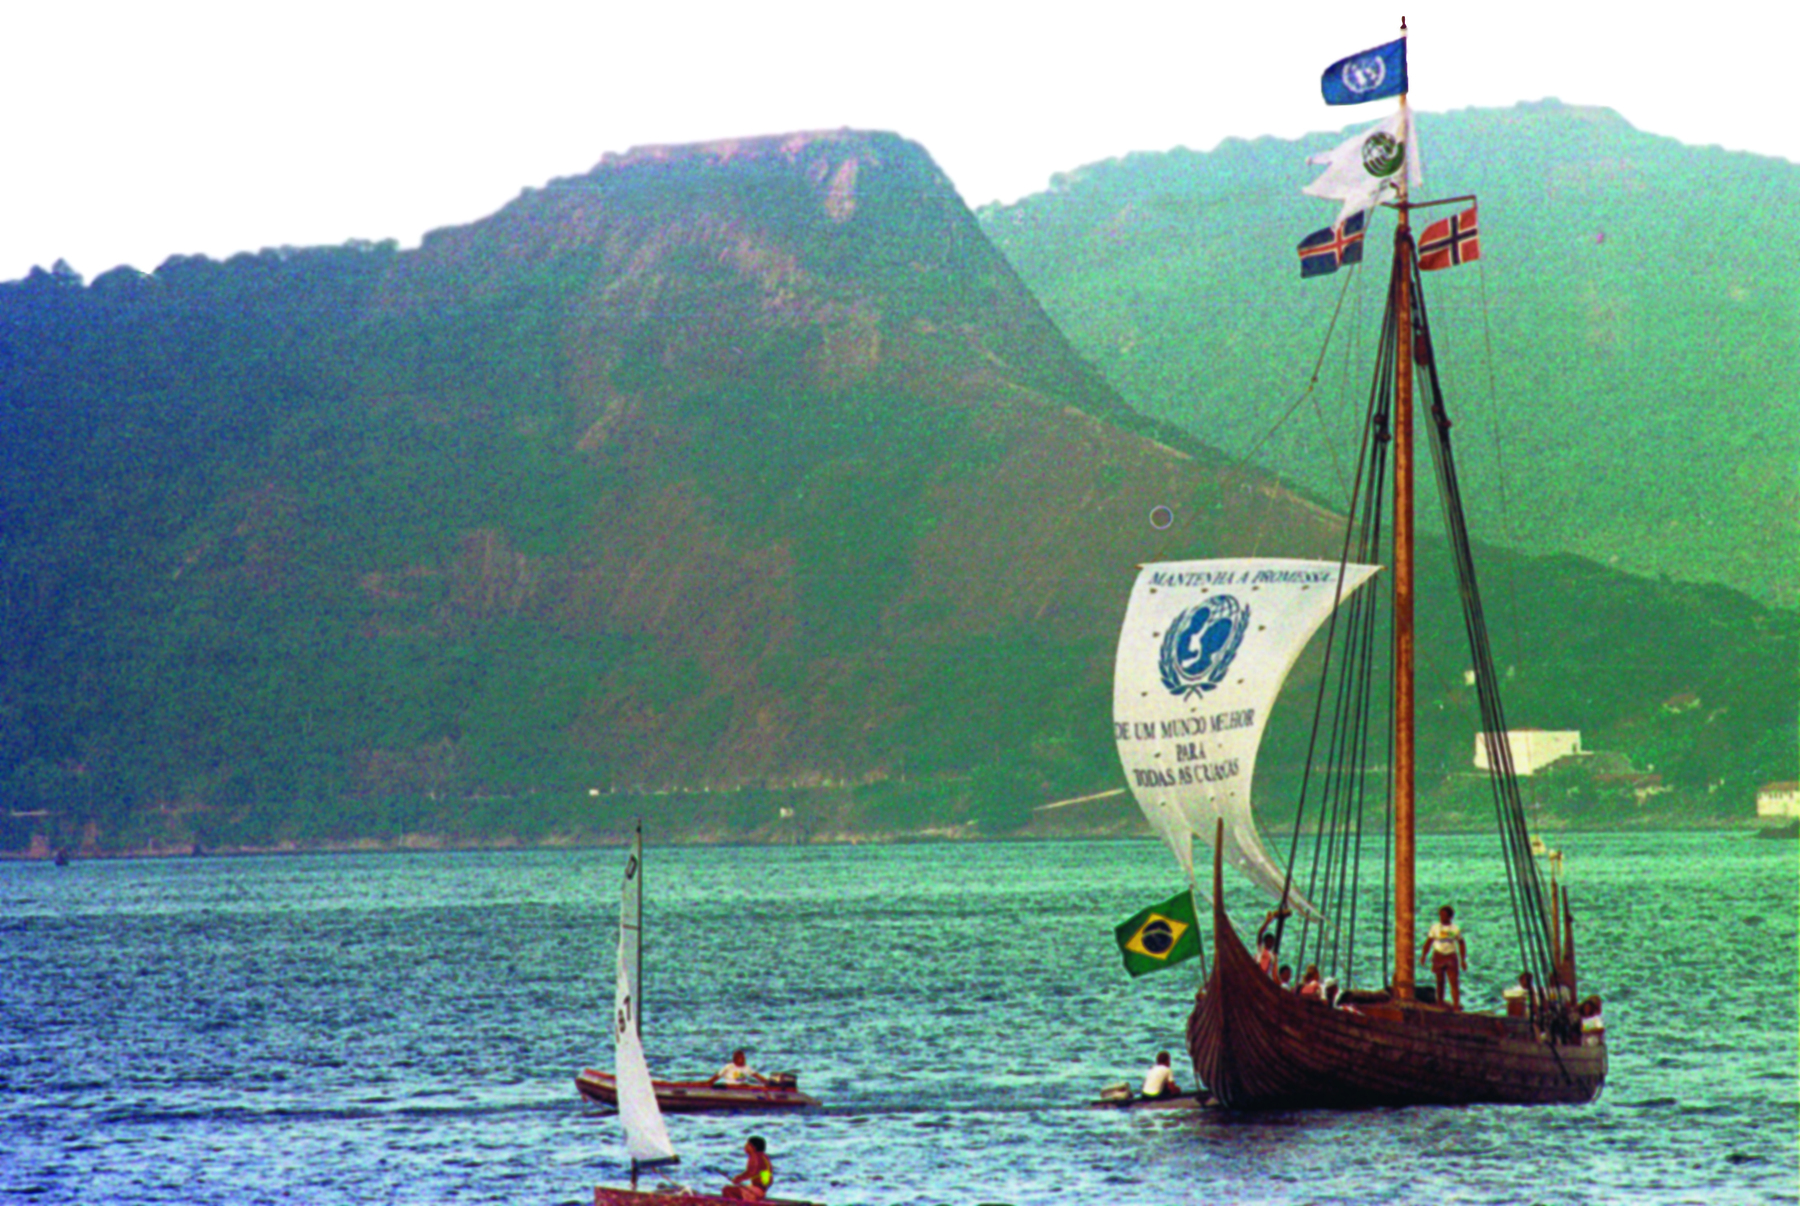 Fotografia. Sobre águas calmas de cor verde escura, à direita, uma embarcação à vela, feita de madeira, com um longo mastro com quatro bandeiras hasteadas: no alto, a bandeira da ONU; abaixo, uma bandeira branca com o logotipo internacional da Conferência das Nações Unidas sobre o Meio Ambiente de 1992 (a Rio -92); à esquerda, a da Islândia e à direita, a da Noruega. Amarrados ao topo do mastro, os cabos formam um triângulo no centro da embarcação. Há um estandarte branco amarrado na proa, com o emblema da UNICEF em azul e o texto Mantenha a promessa de um mundo melhor para todas as crianças. Acima do costado da embarcação, todo feito de madeira, a bandeira do Brasil. Um tripulante da embarcação está no centro do convés em pé. Outro acena com um braço para ao alto. À direita, há dois botes infláveis movidos a motor, cada um deles pilotado por um homem. Mais à frente, há um pequeno catamarã, visto de lado. Ao fundo, montanhas cobertas de vegetação verde e, no alto, o céu azul claro.